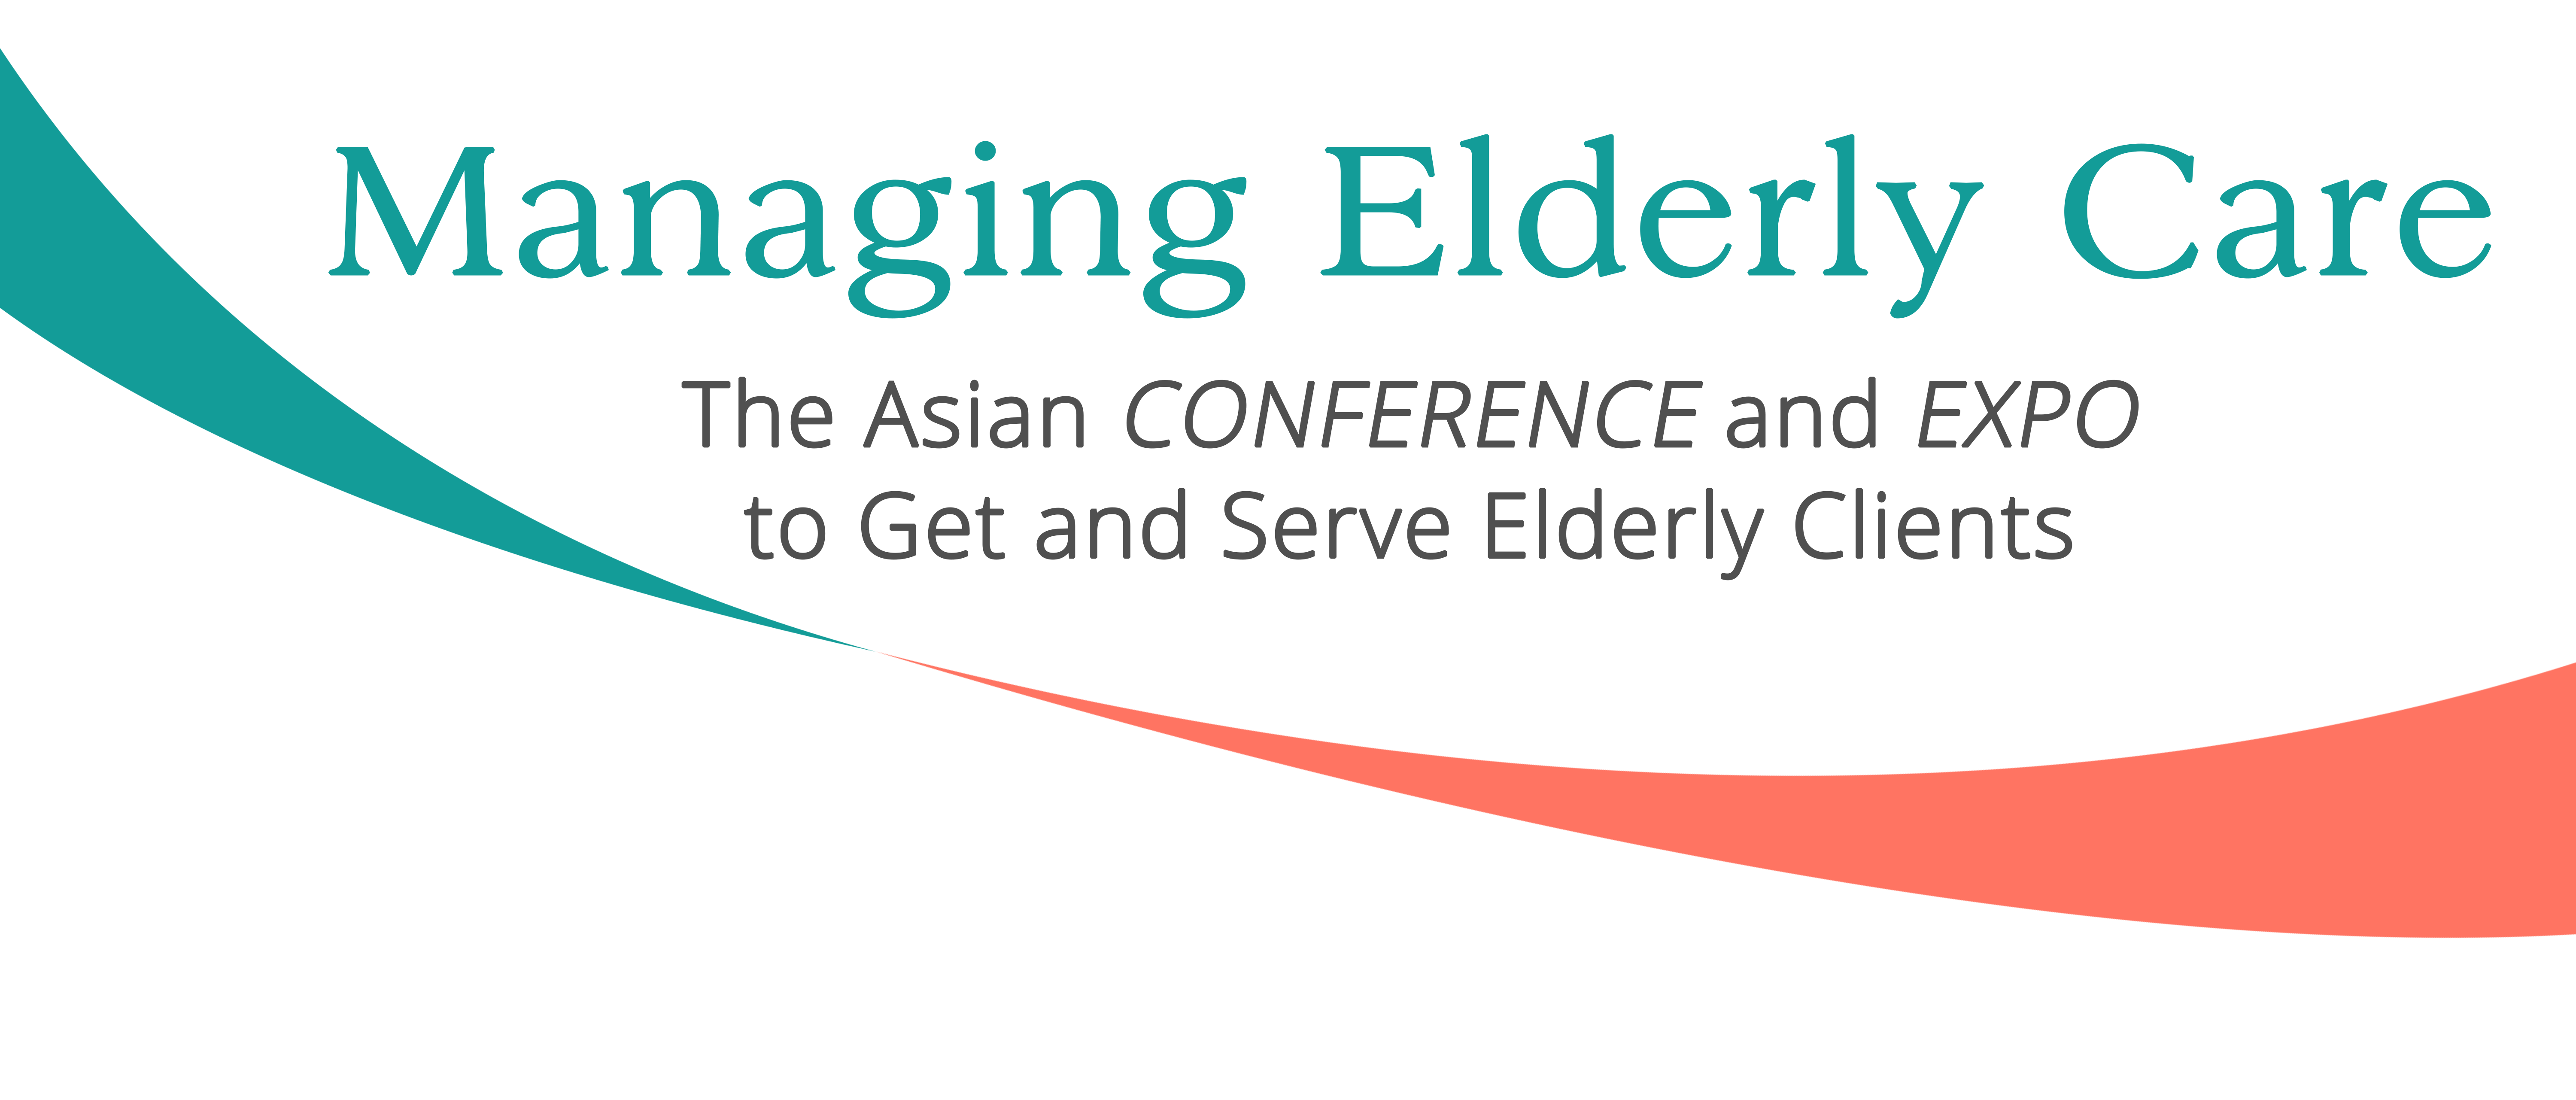 Managing Elderly Care